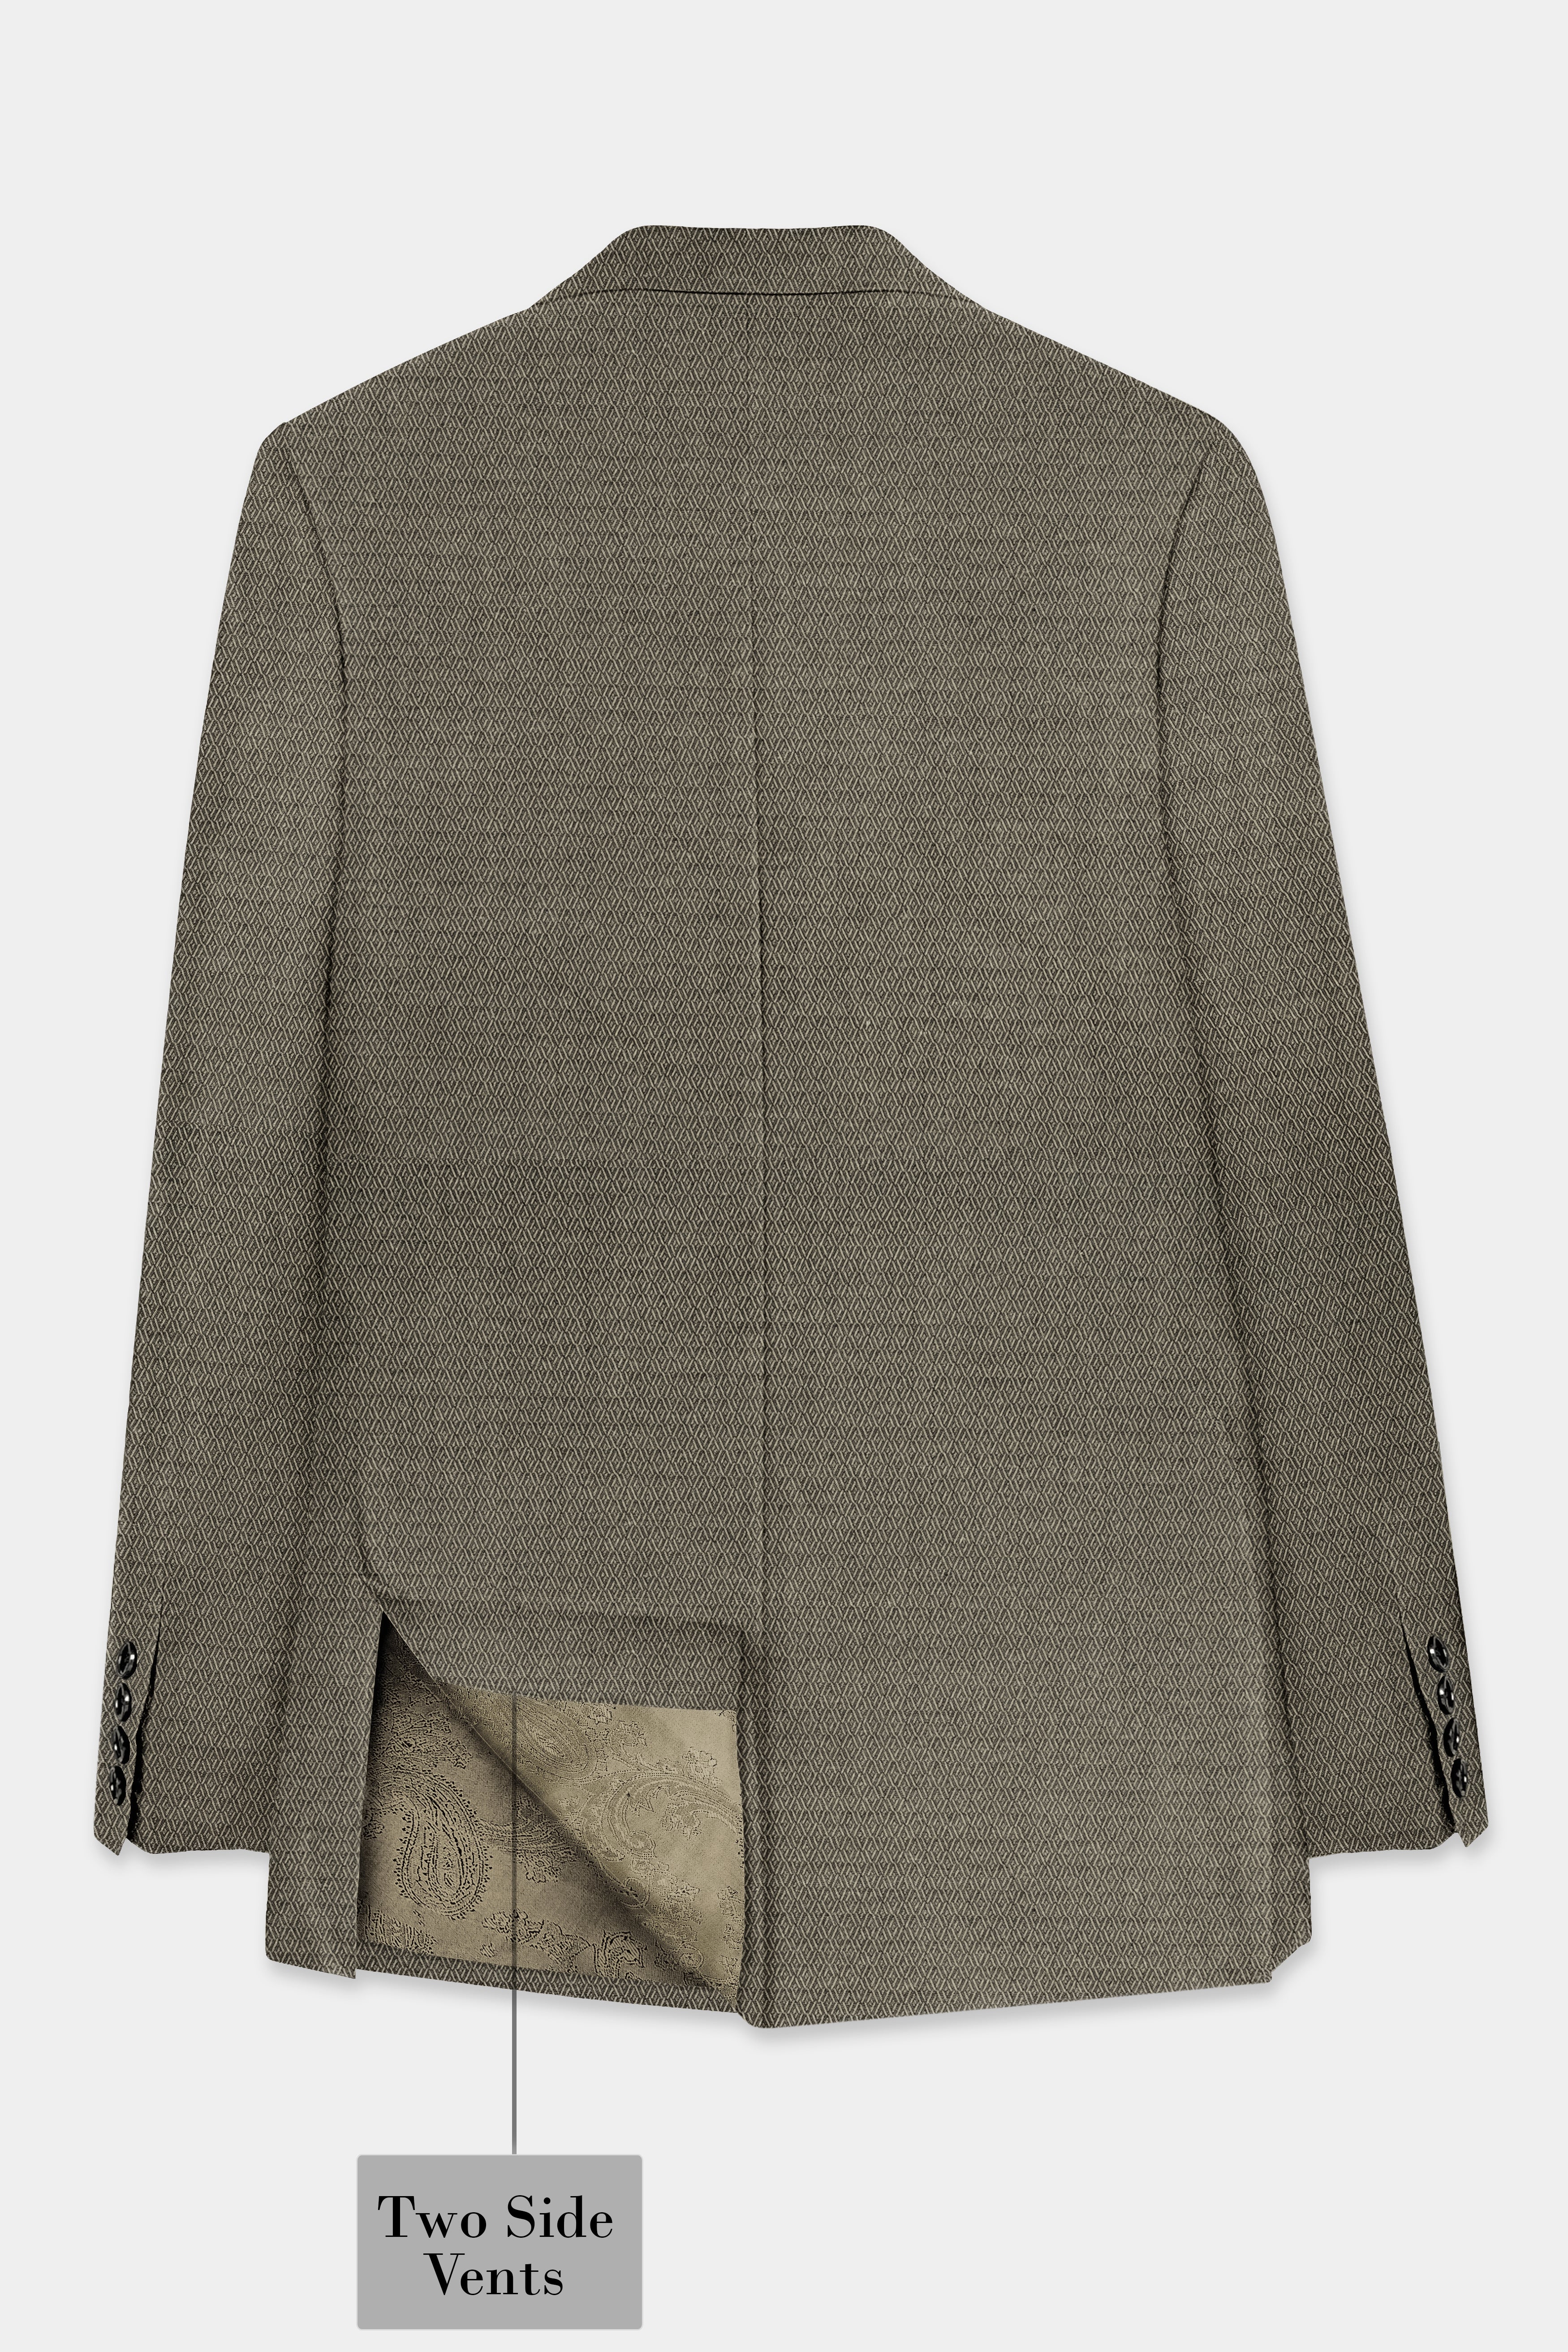 Wenge Brown Dobby Textured wool blend Blazer